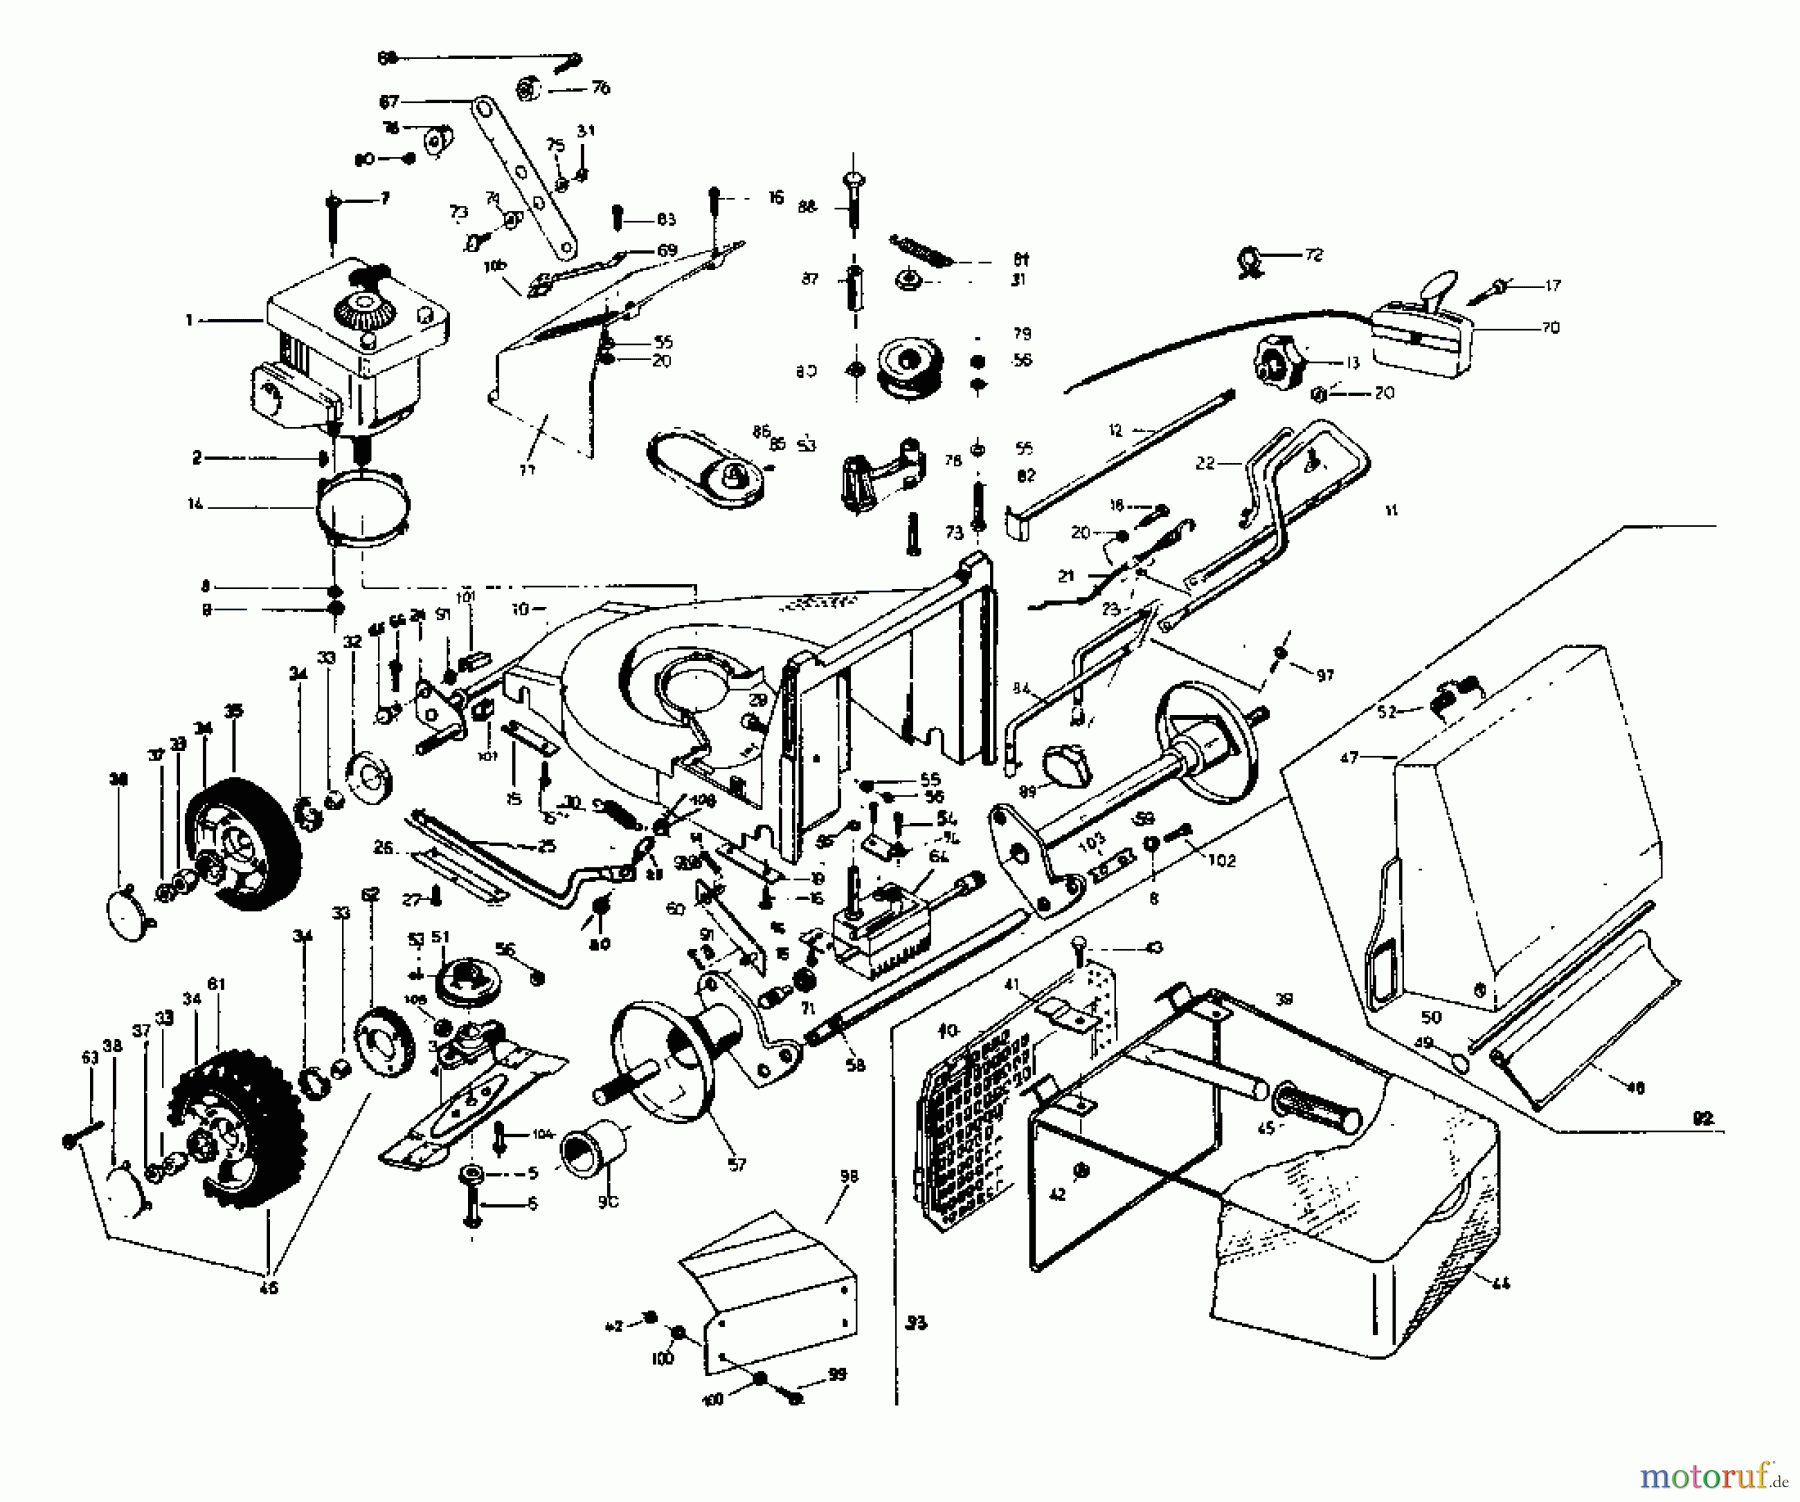  Rotaro Motormäher mit Antrieb ROTARO  48 S 181-0157  (1991) Grundgerät